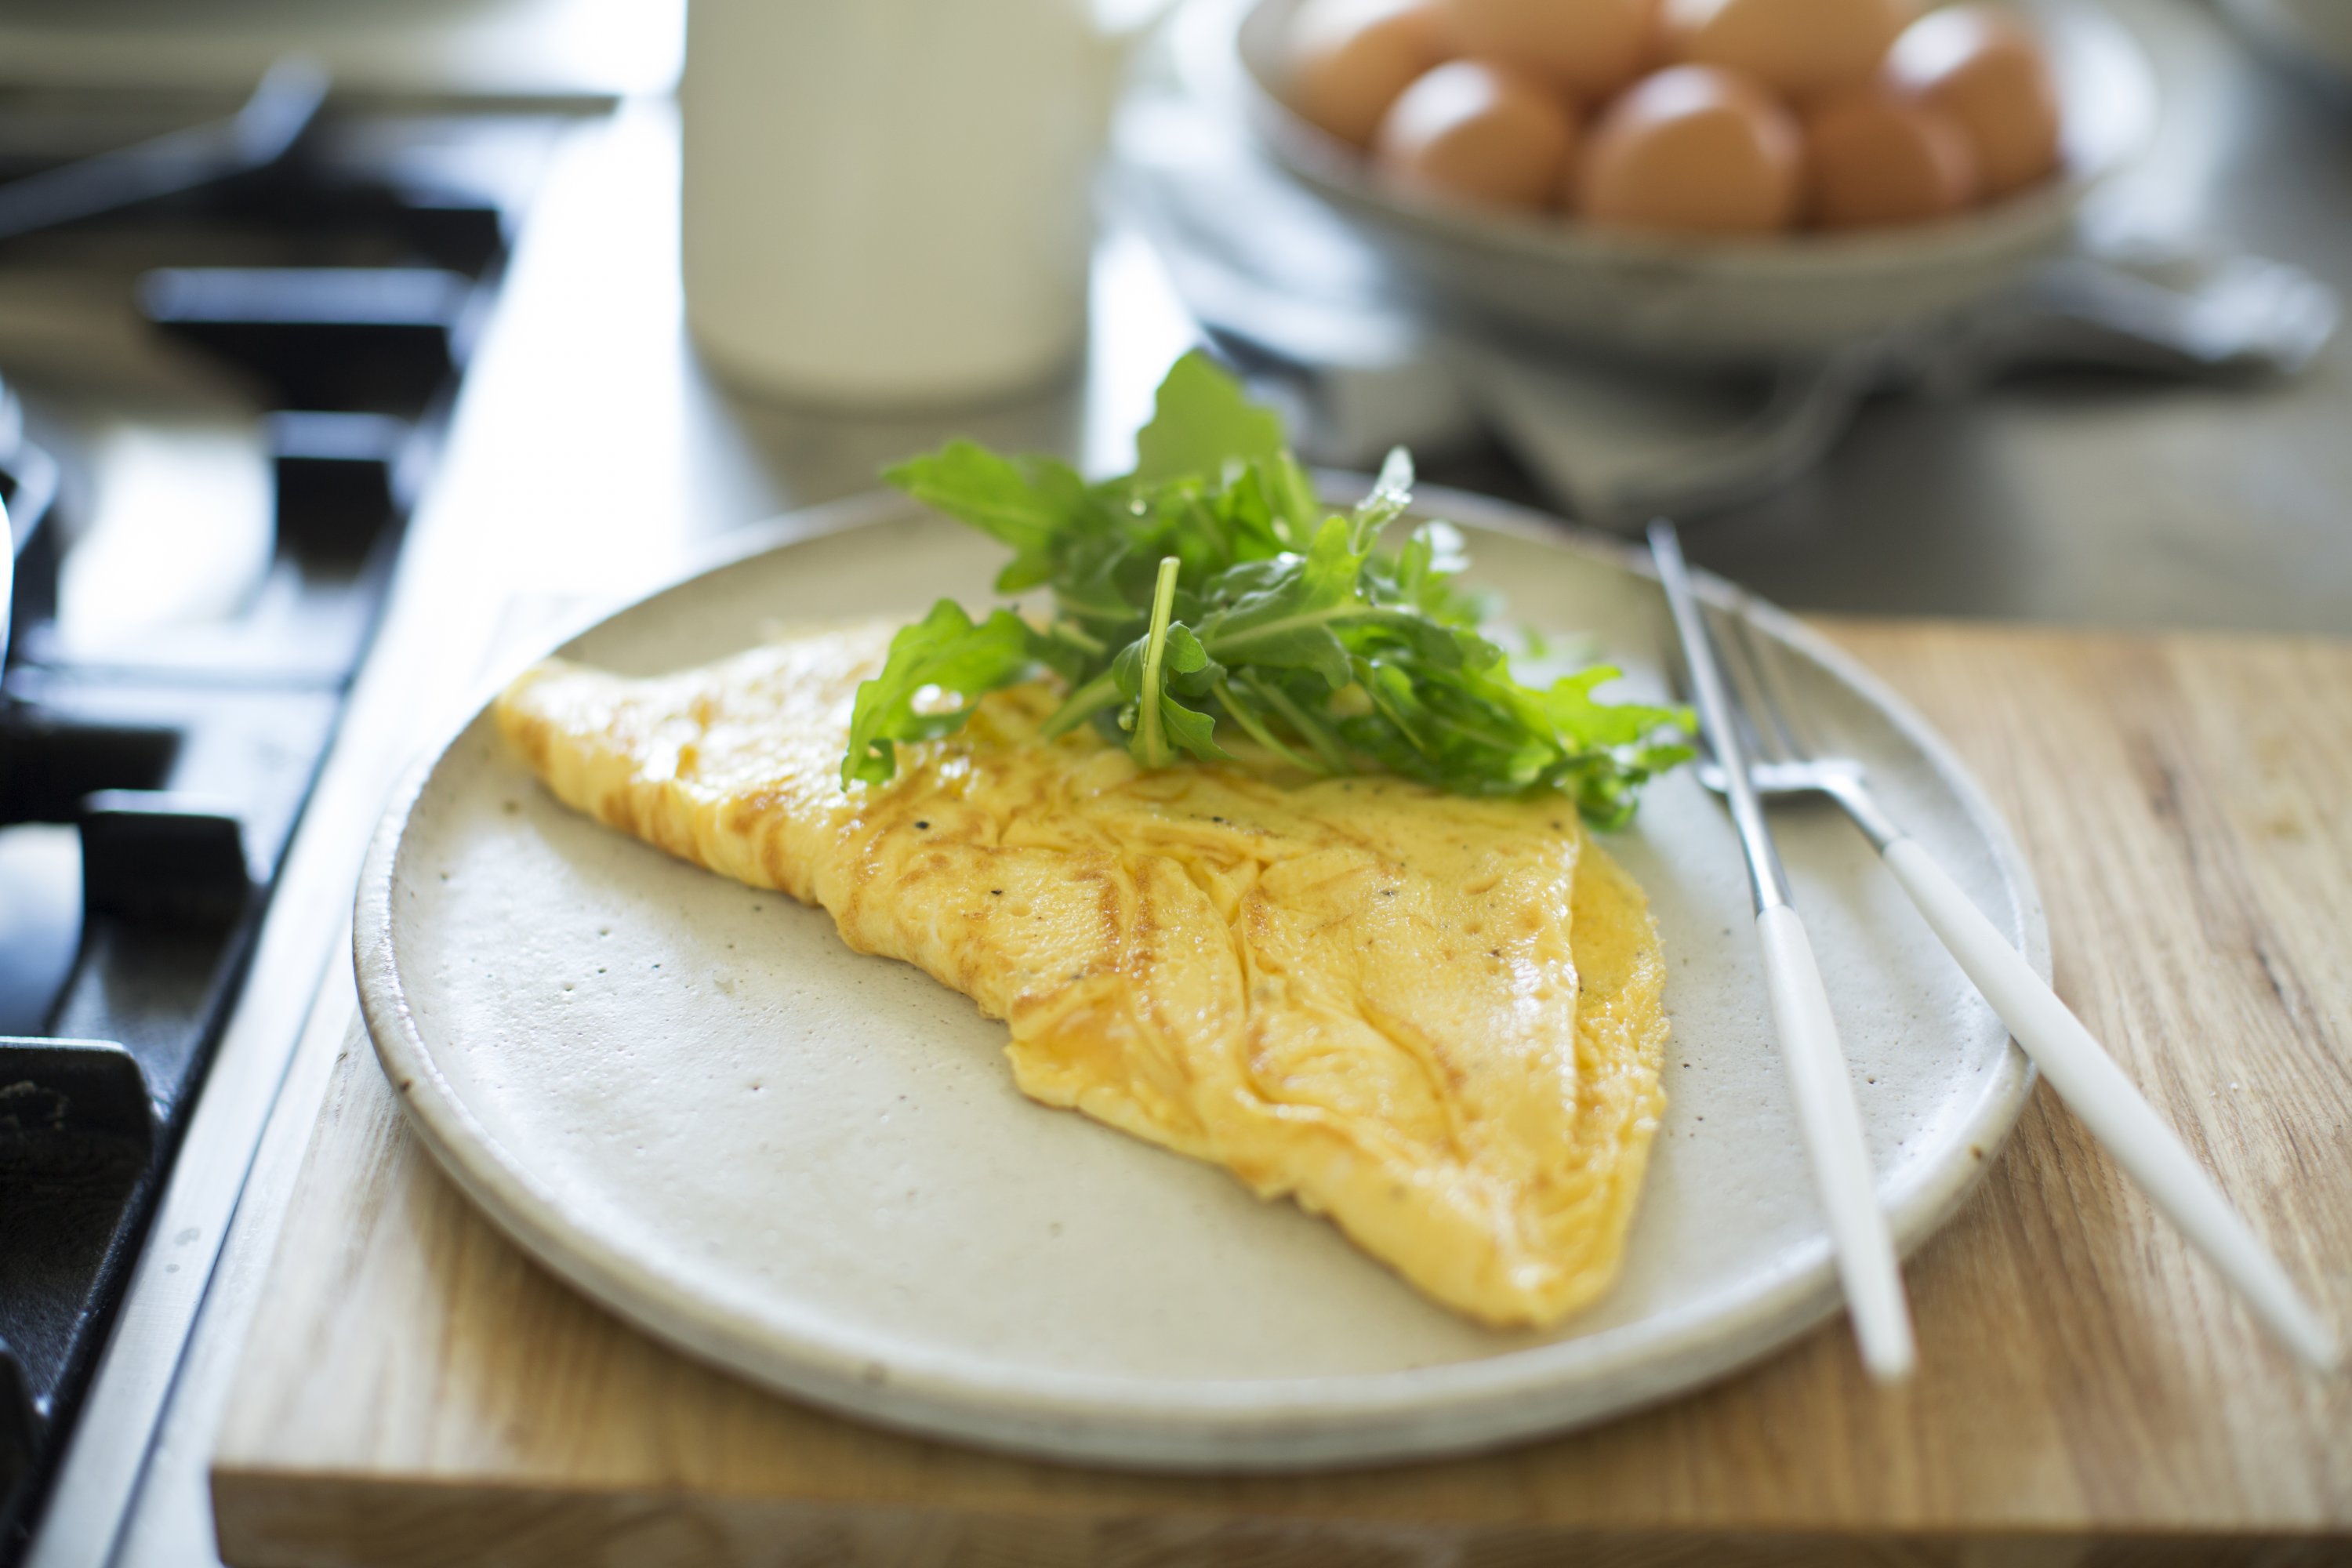 Easy Omelette Recipe: How To Make A Basic Two Egg Omelette